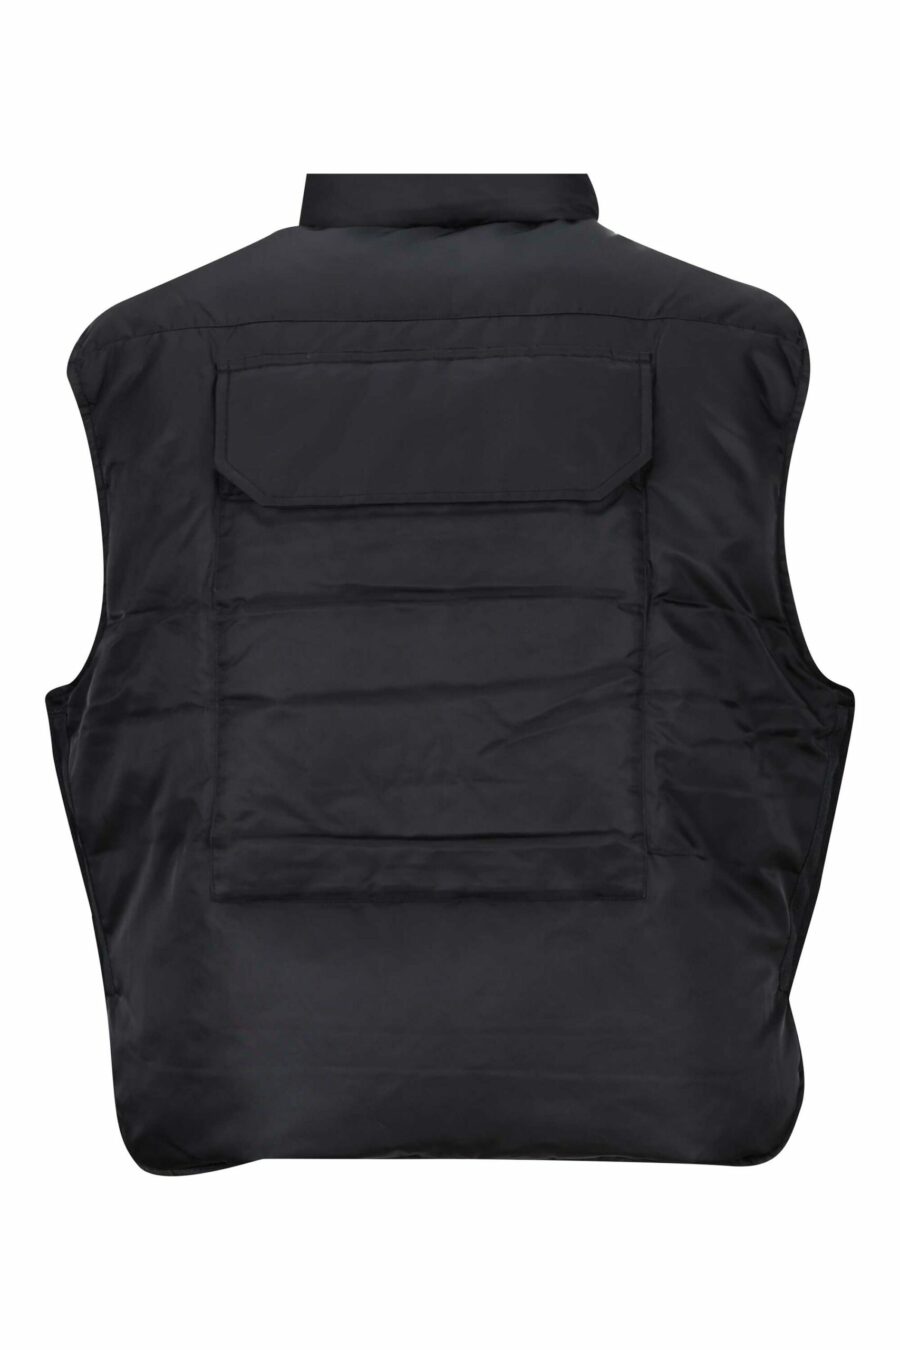 Schwarze Weste mit Taschen und Mini-Logo "kenzo paris" - 3612230487857 2 skaliert